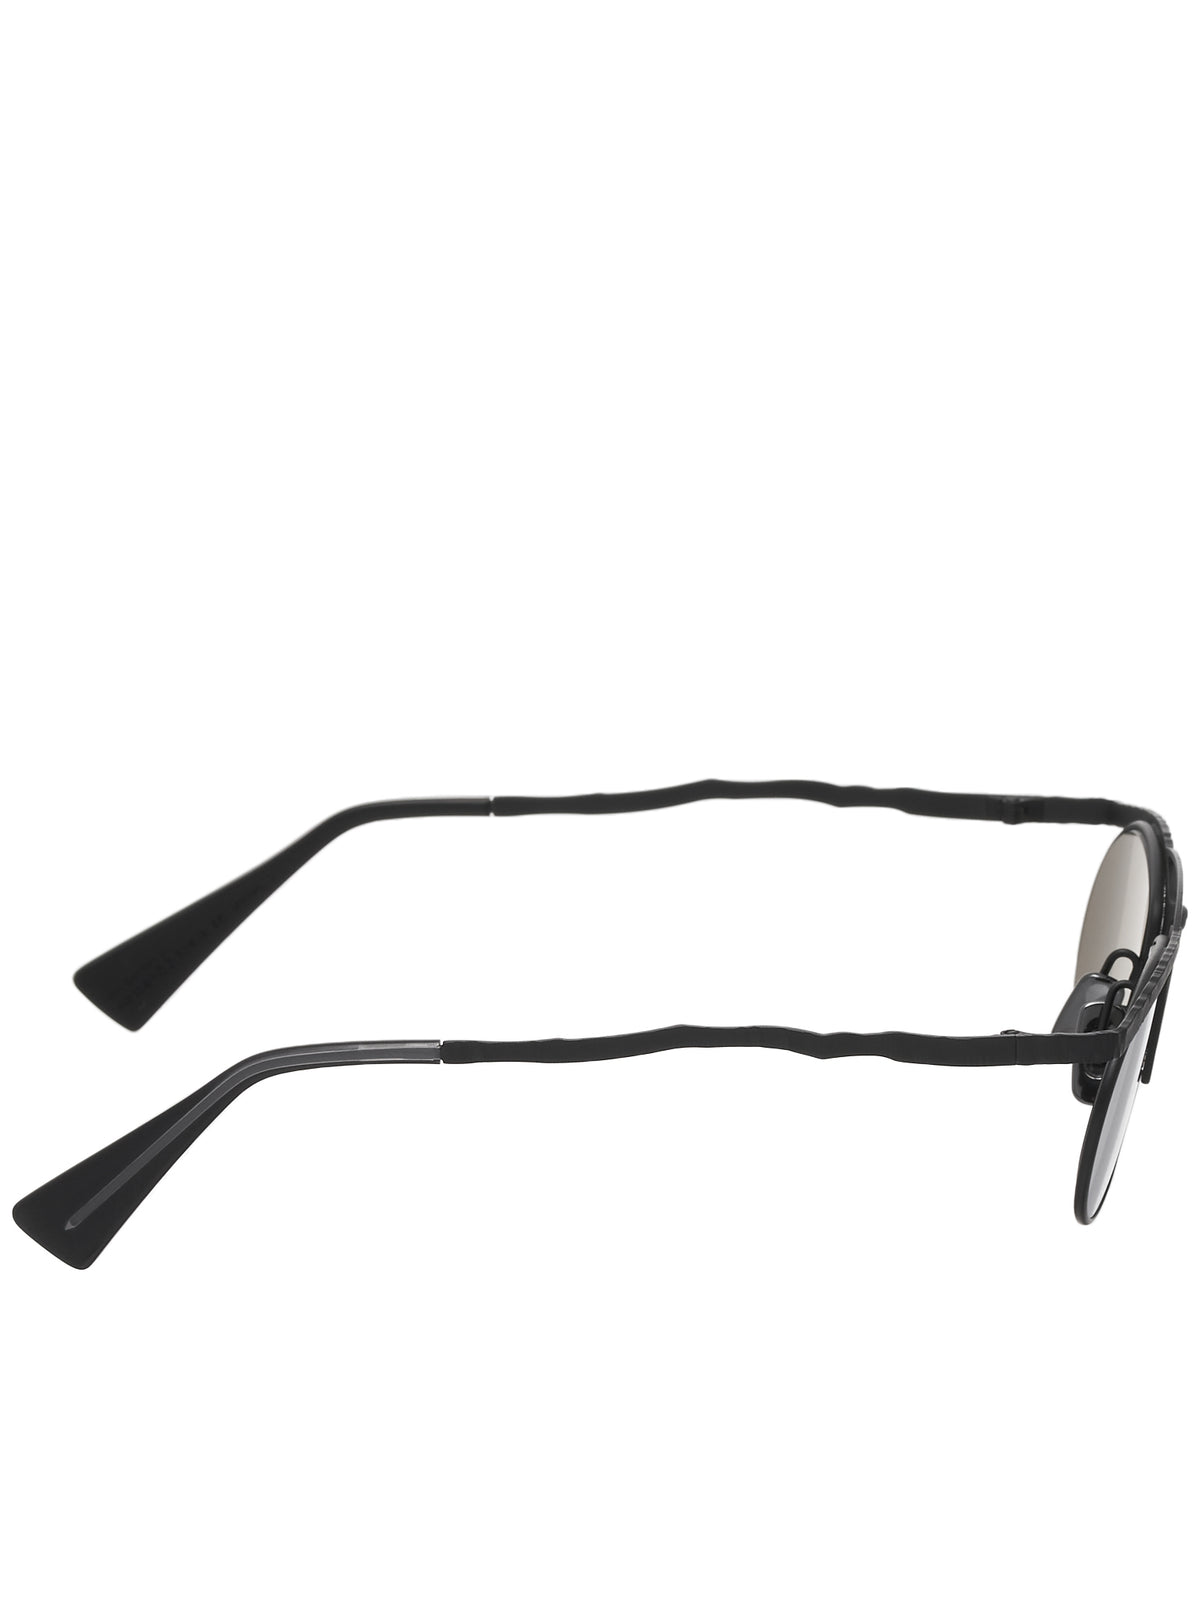 H52 Sunglasses (H52-52-18-BB-SILVER)